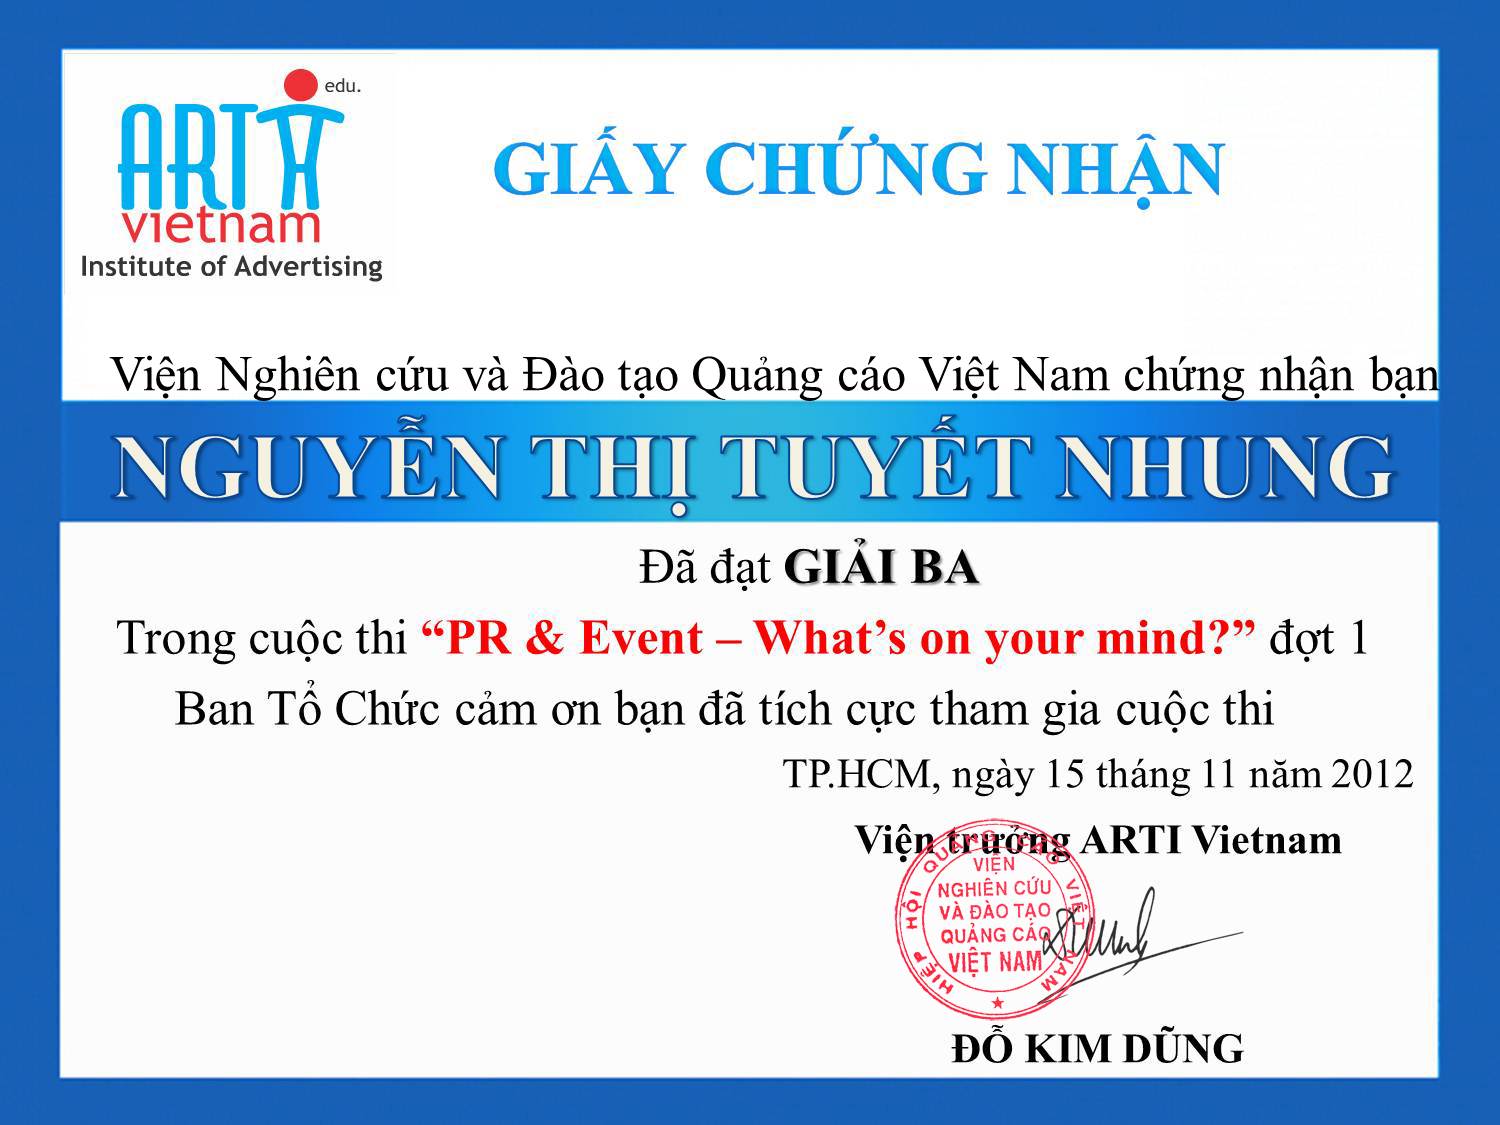 Description: ARTI Vietnam_Giai ba_Nguyen Thi Tuyet Nhung